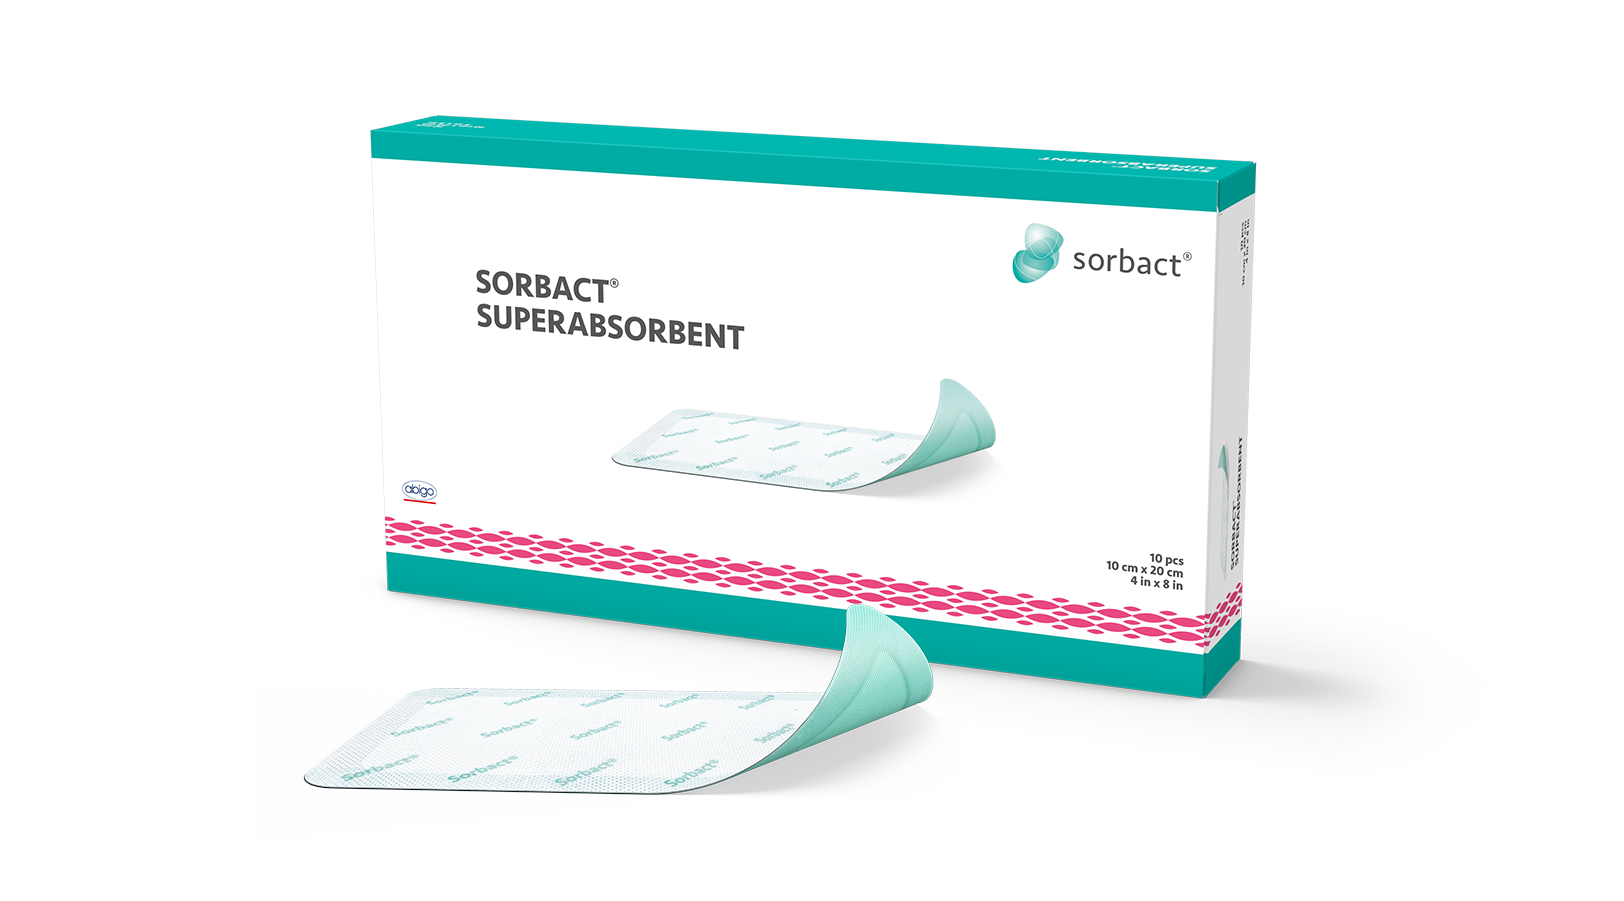 sorbact-superabsorbent-1624x901-2020